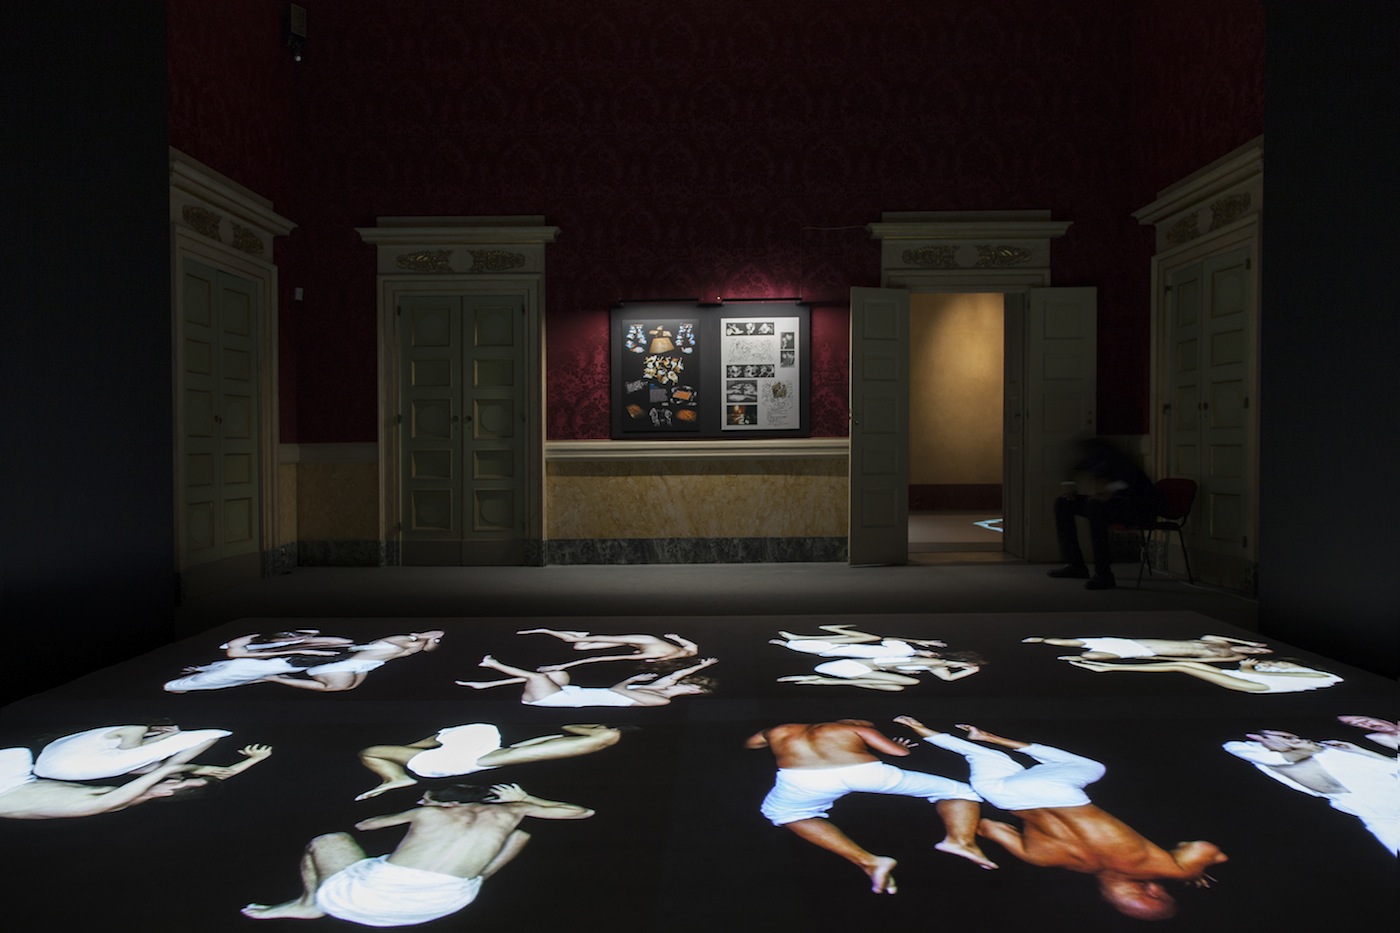 STUDIO AZZURRO, una veduta della mostra "Immagini sensibili", Palazzo Reale, Milano